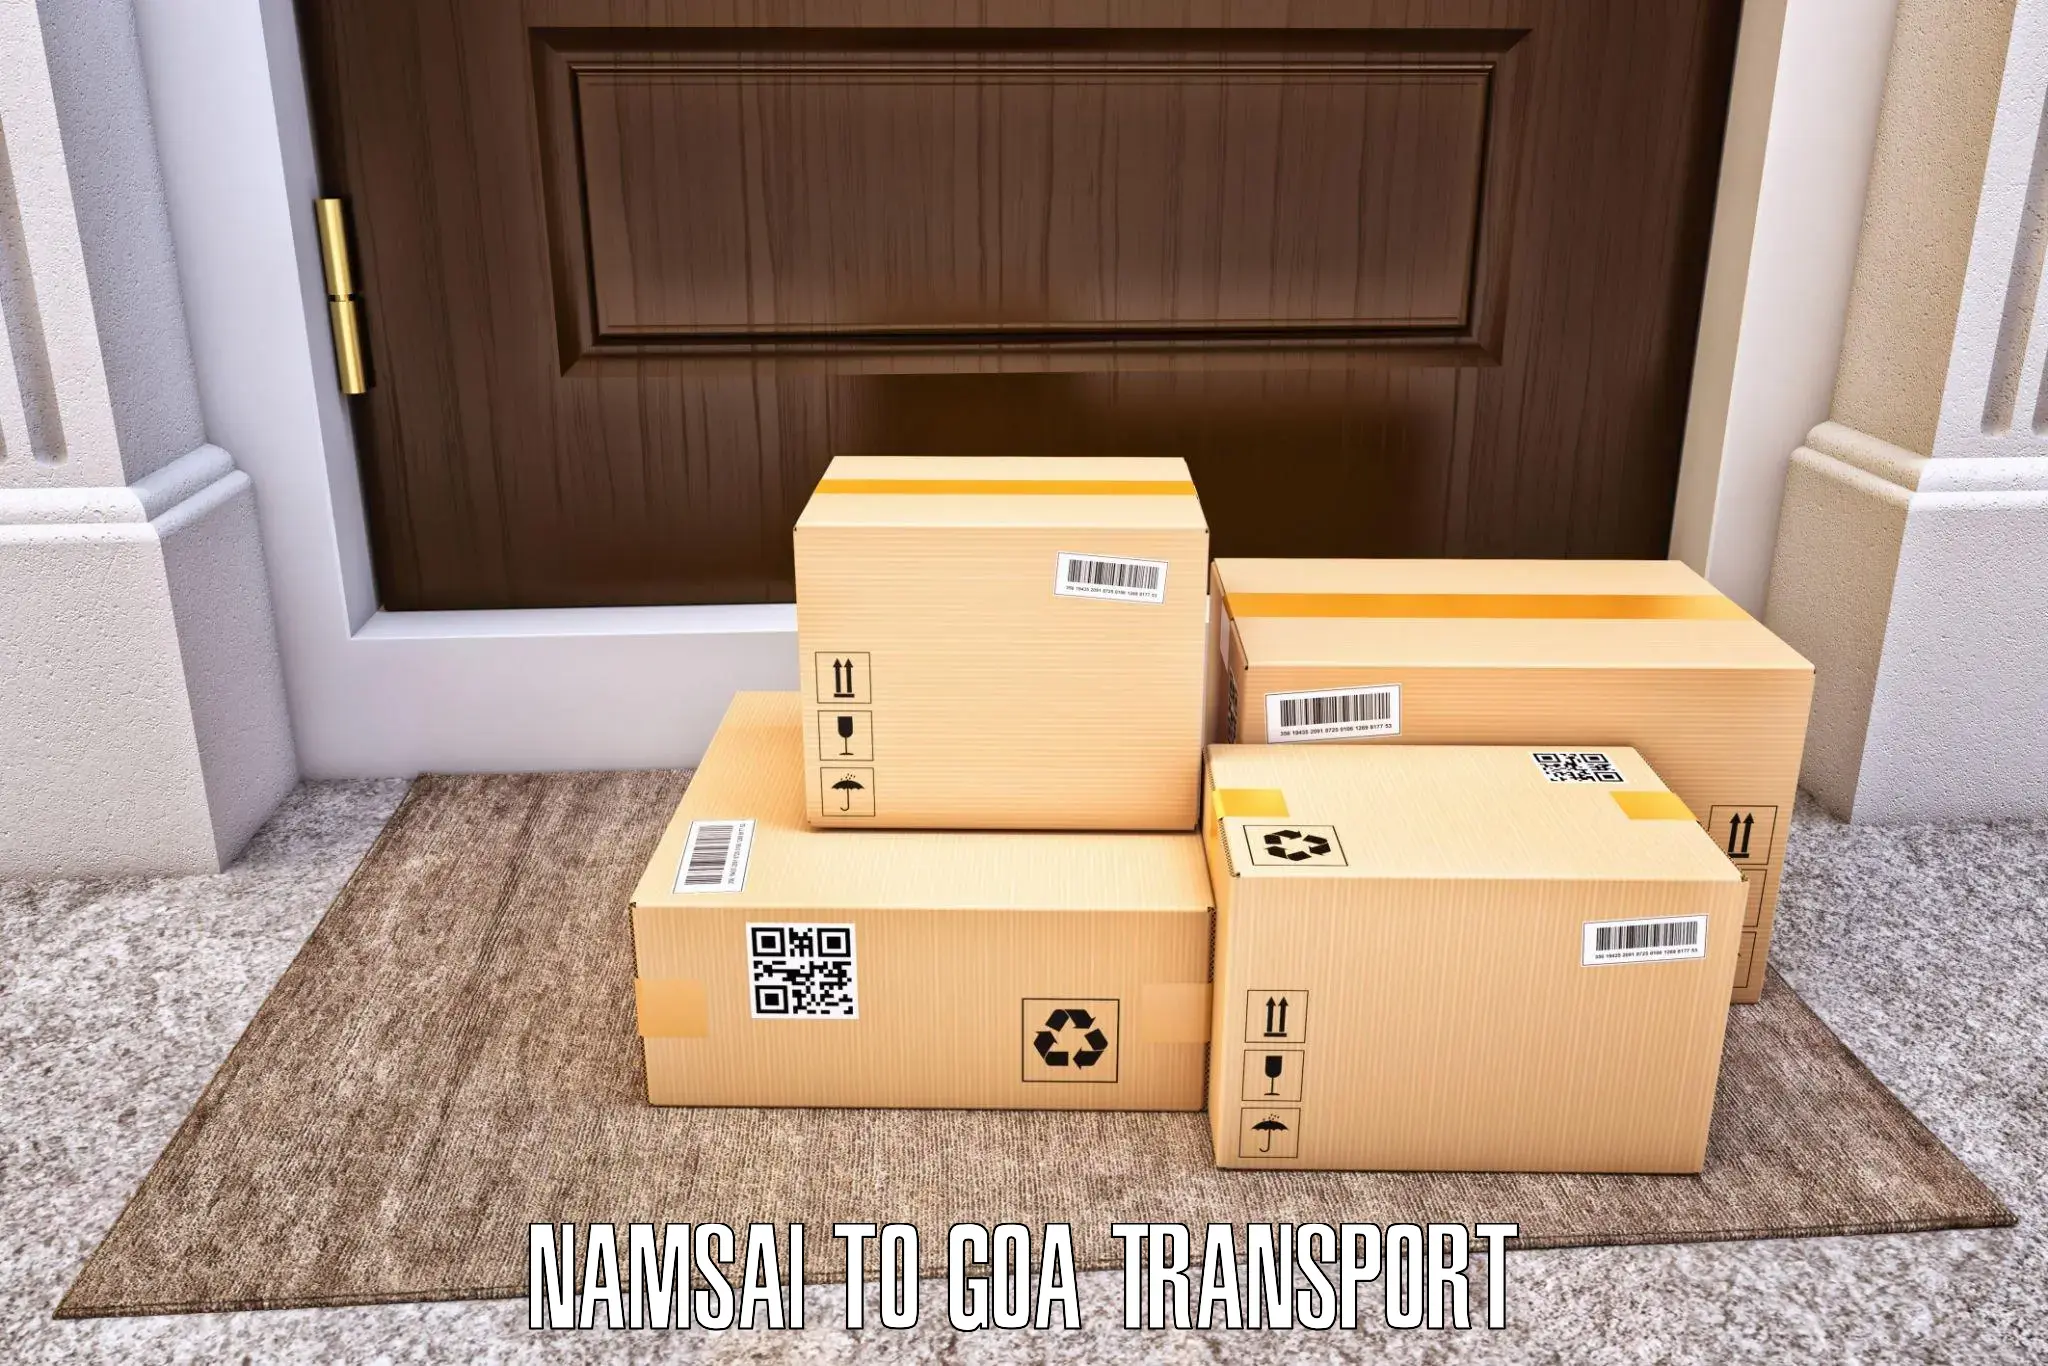 Shipping services Namsai to NIT Goa